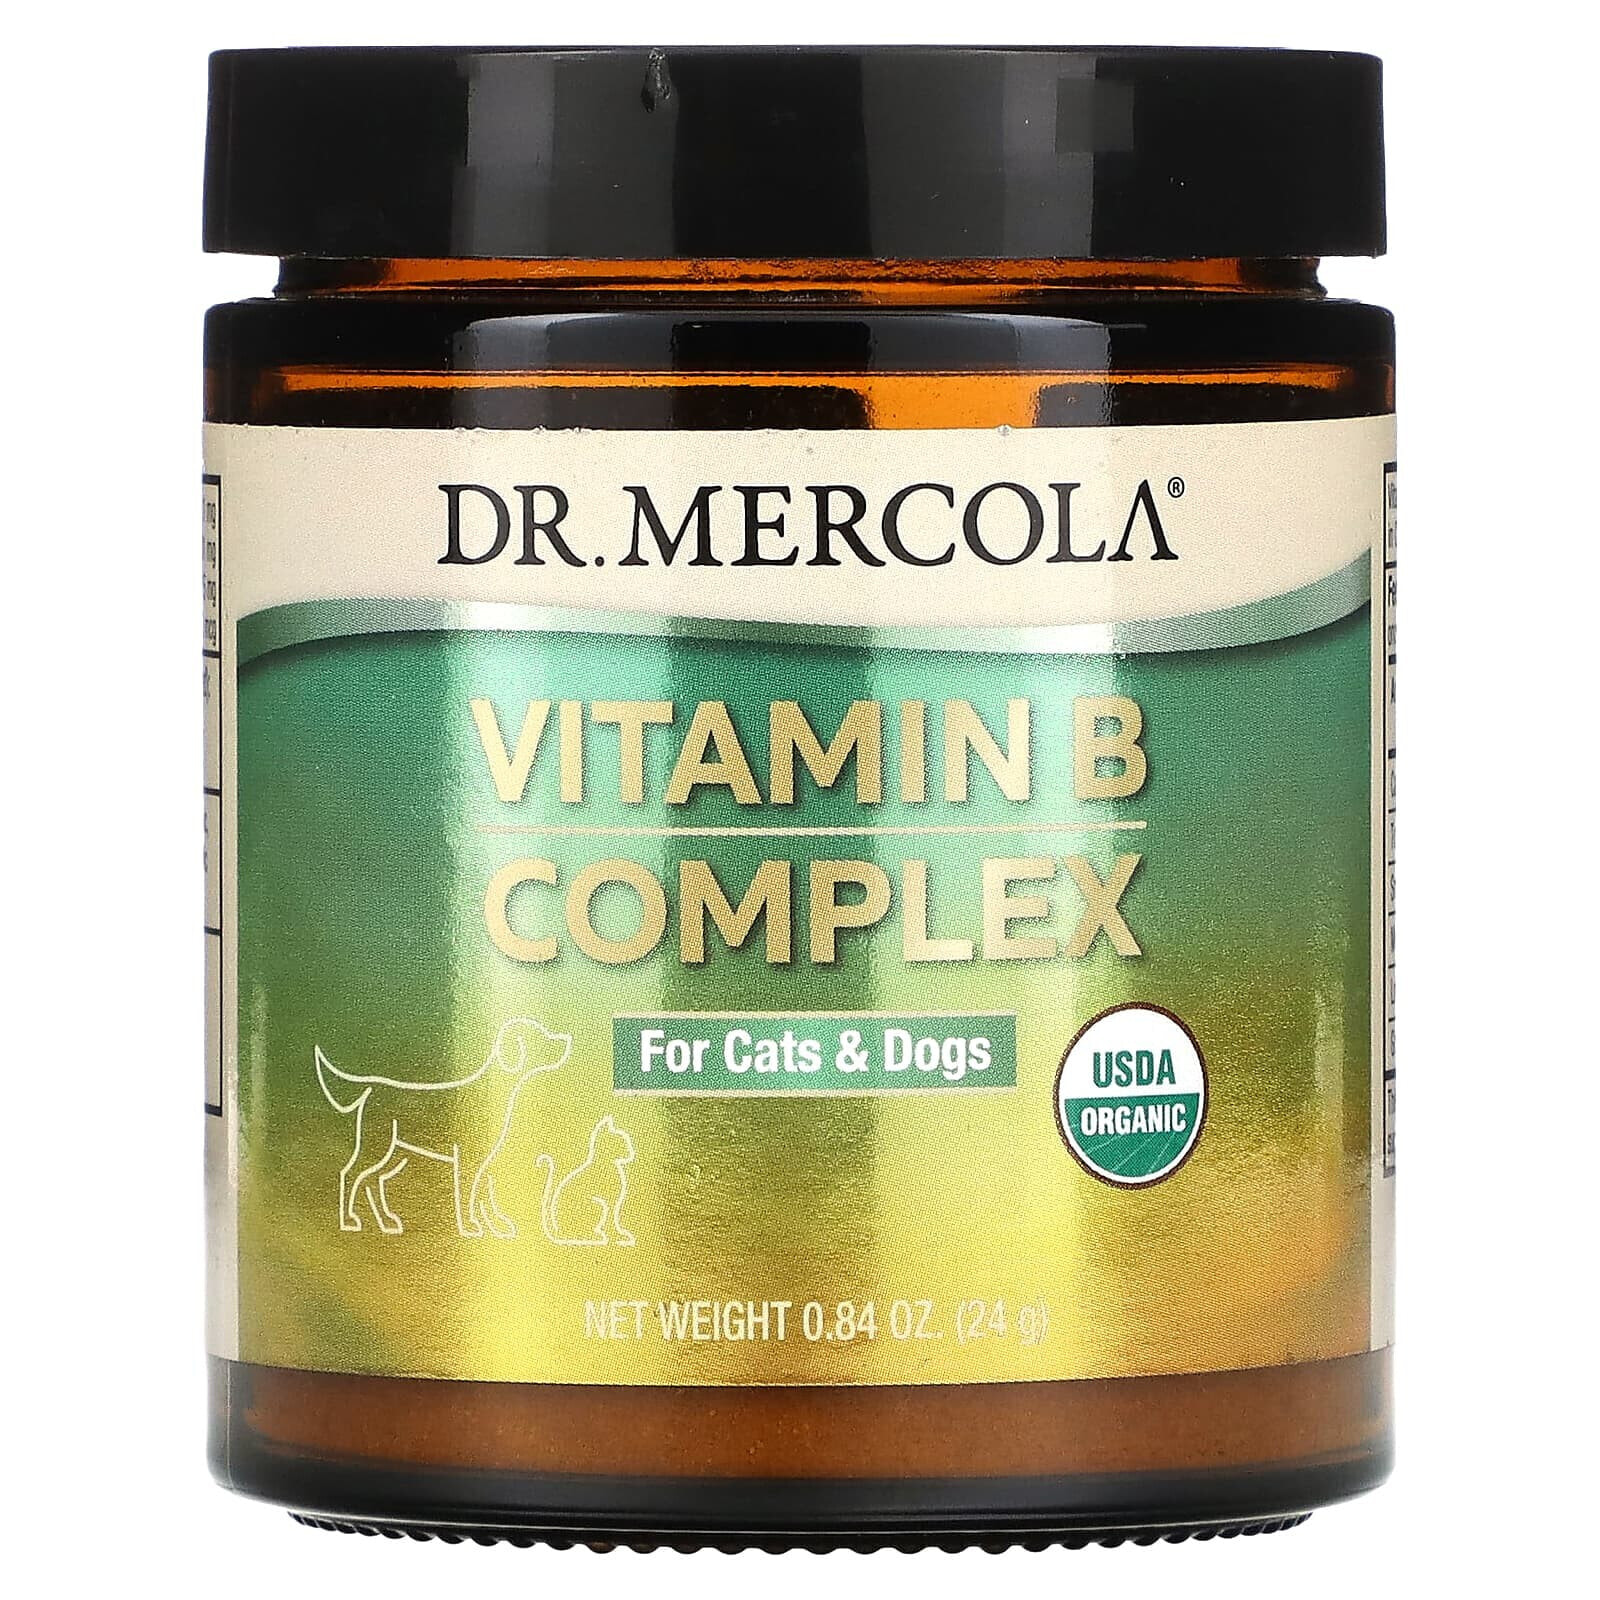 ДР. Меркола, Комплекс витаминов B, для кошек и собак, 0,84 унции (24 г)